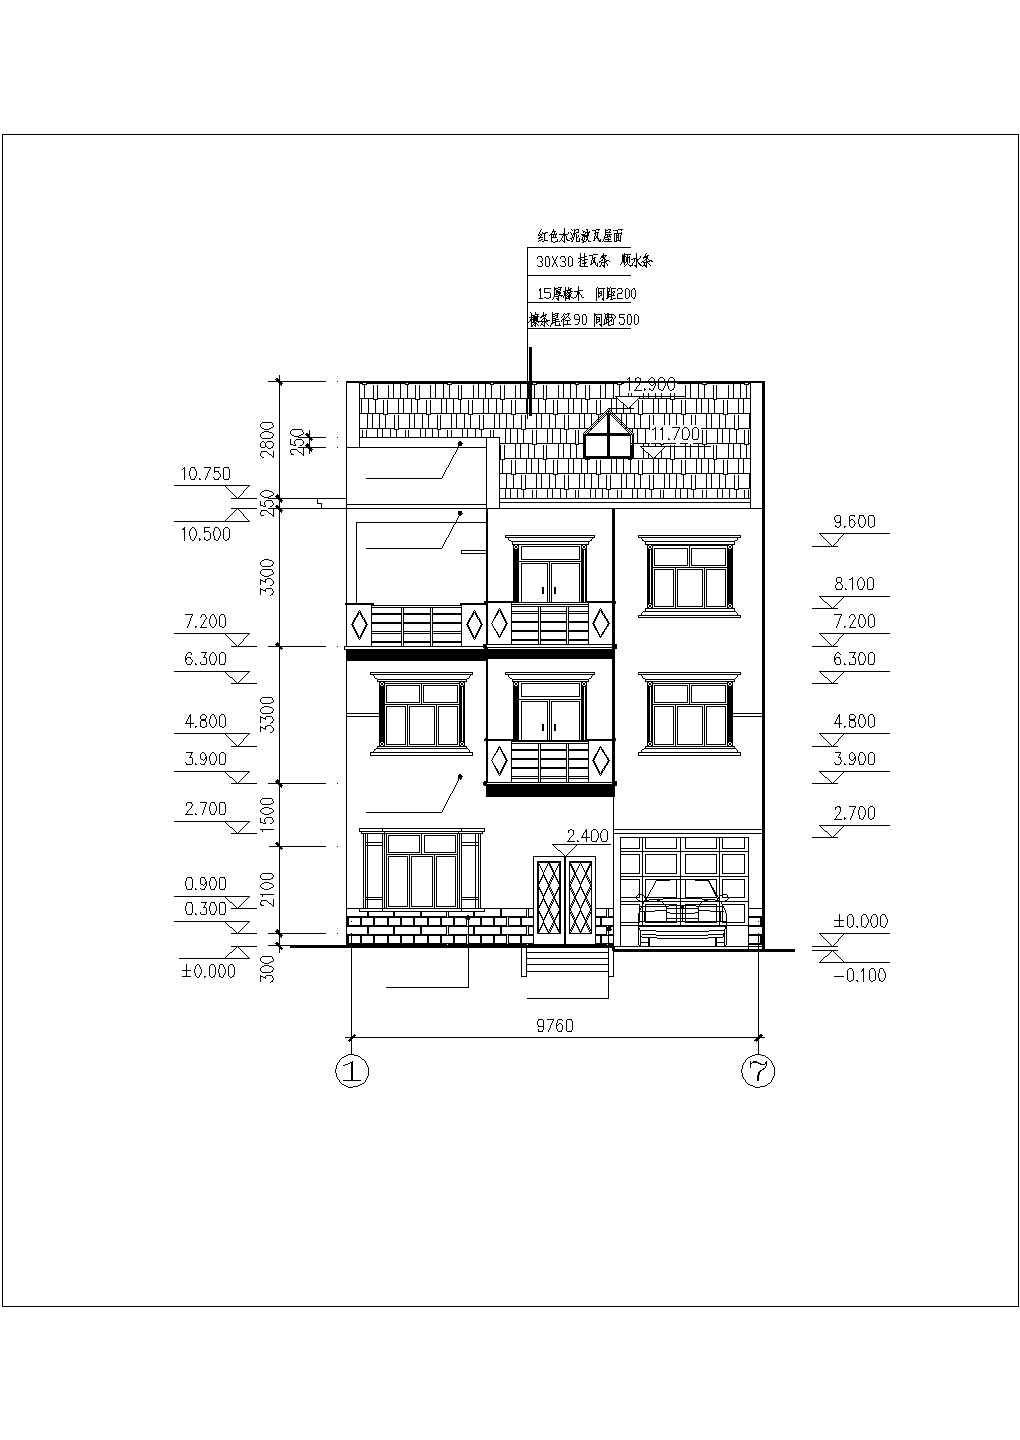 某市豪华独立家庭型别墅建筑设计施工图纸